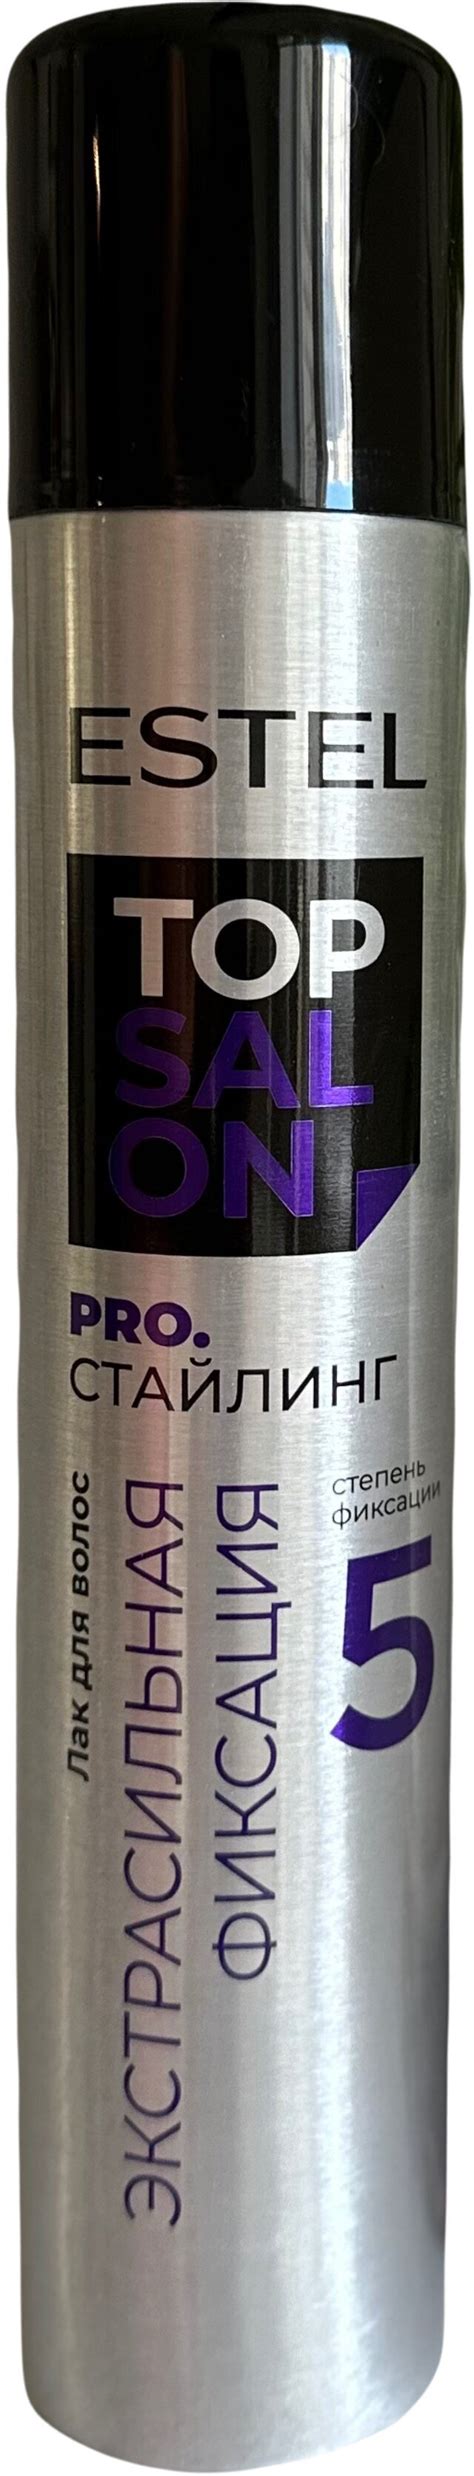 Лак для волос ESTEL TOP SALON PRO стайлинг Экстрасильная фиксация 300